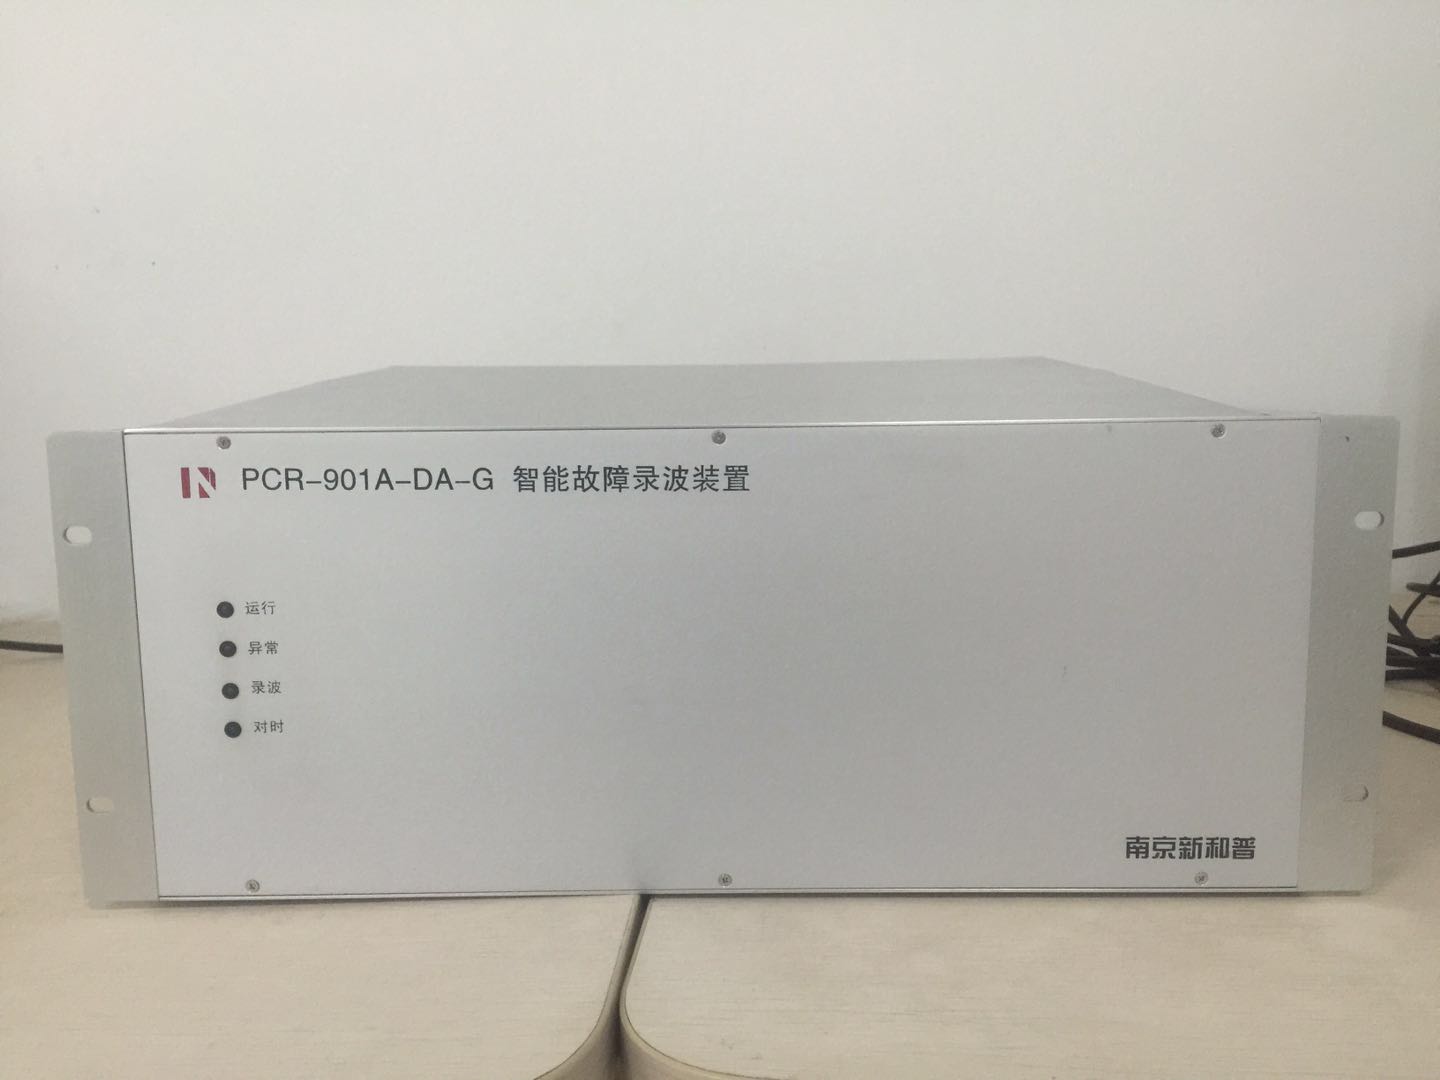 PCR-901A-DA-G智能故障录波装置简介